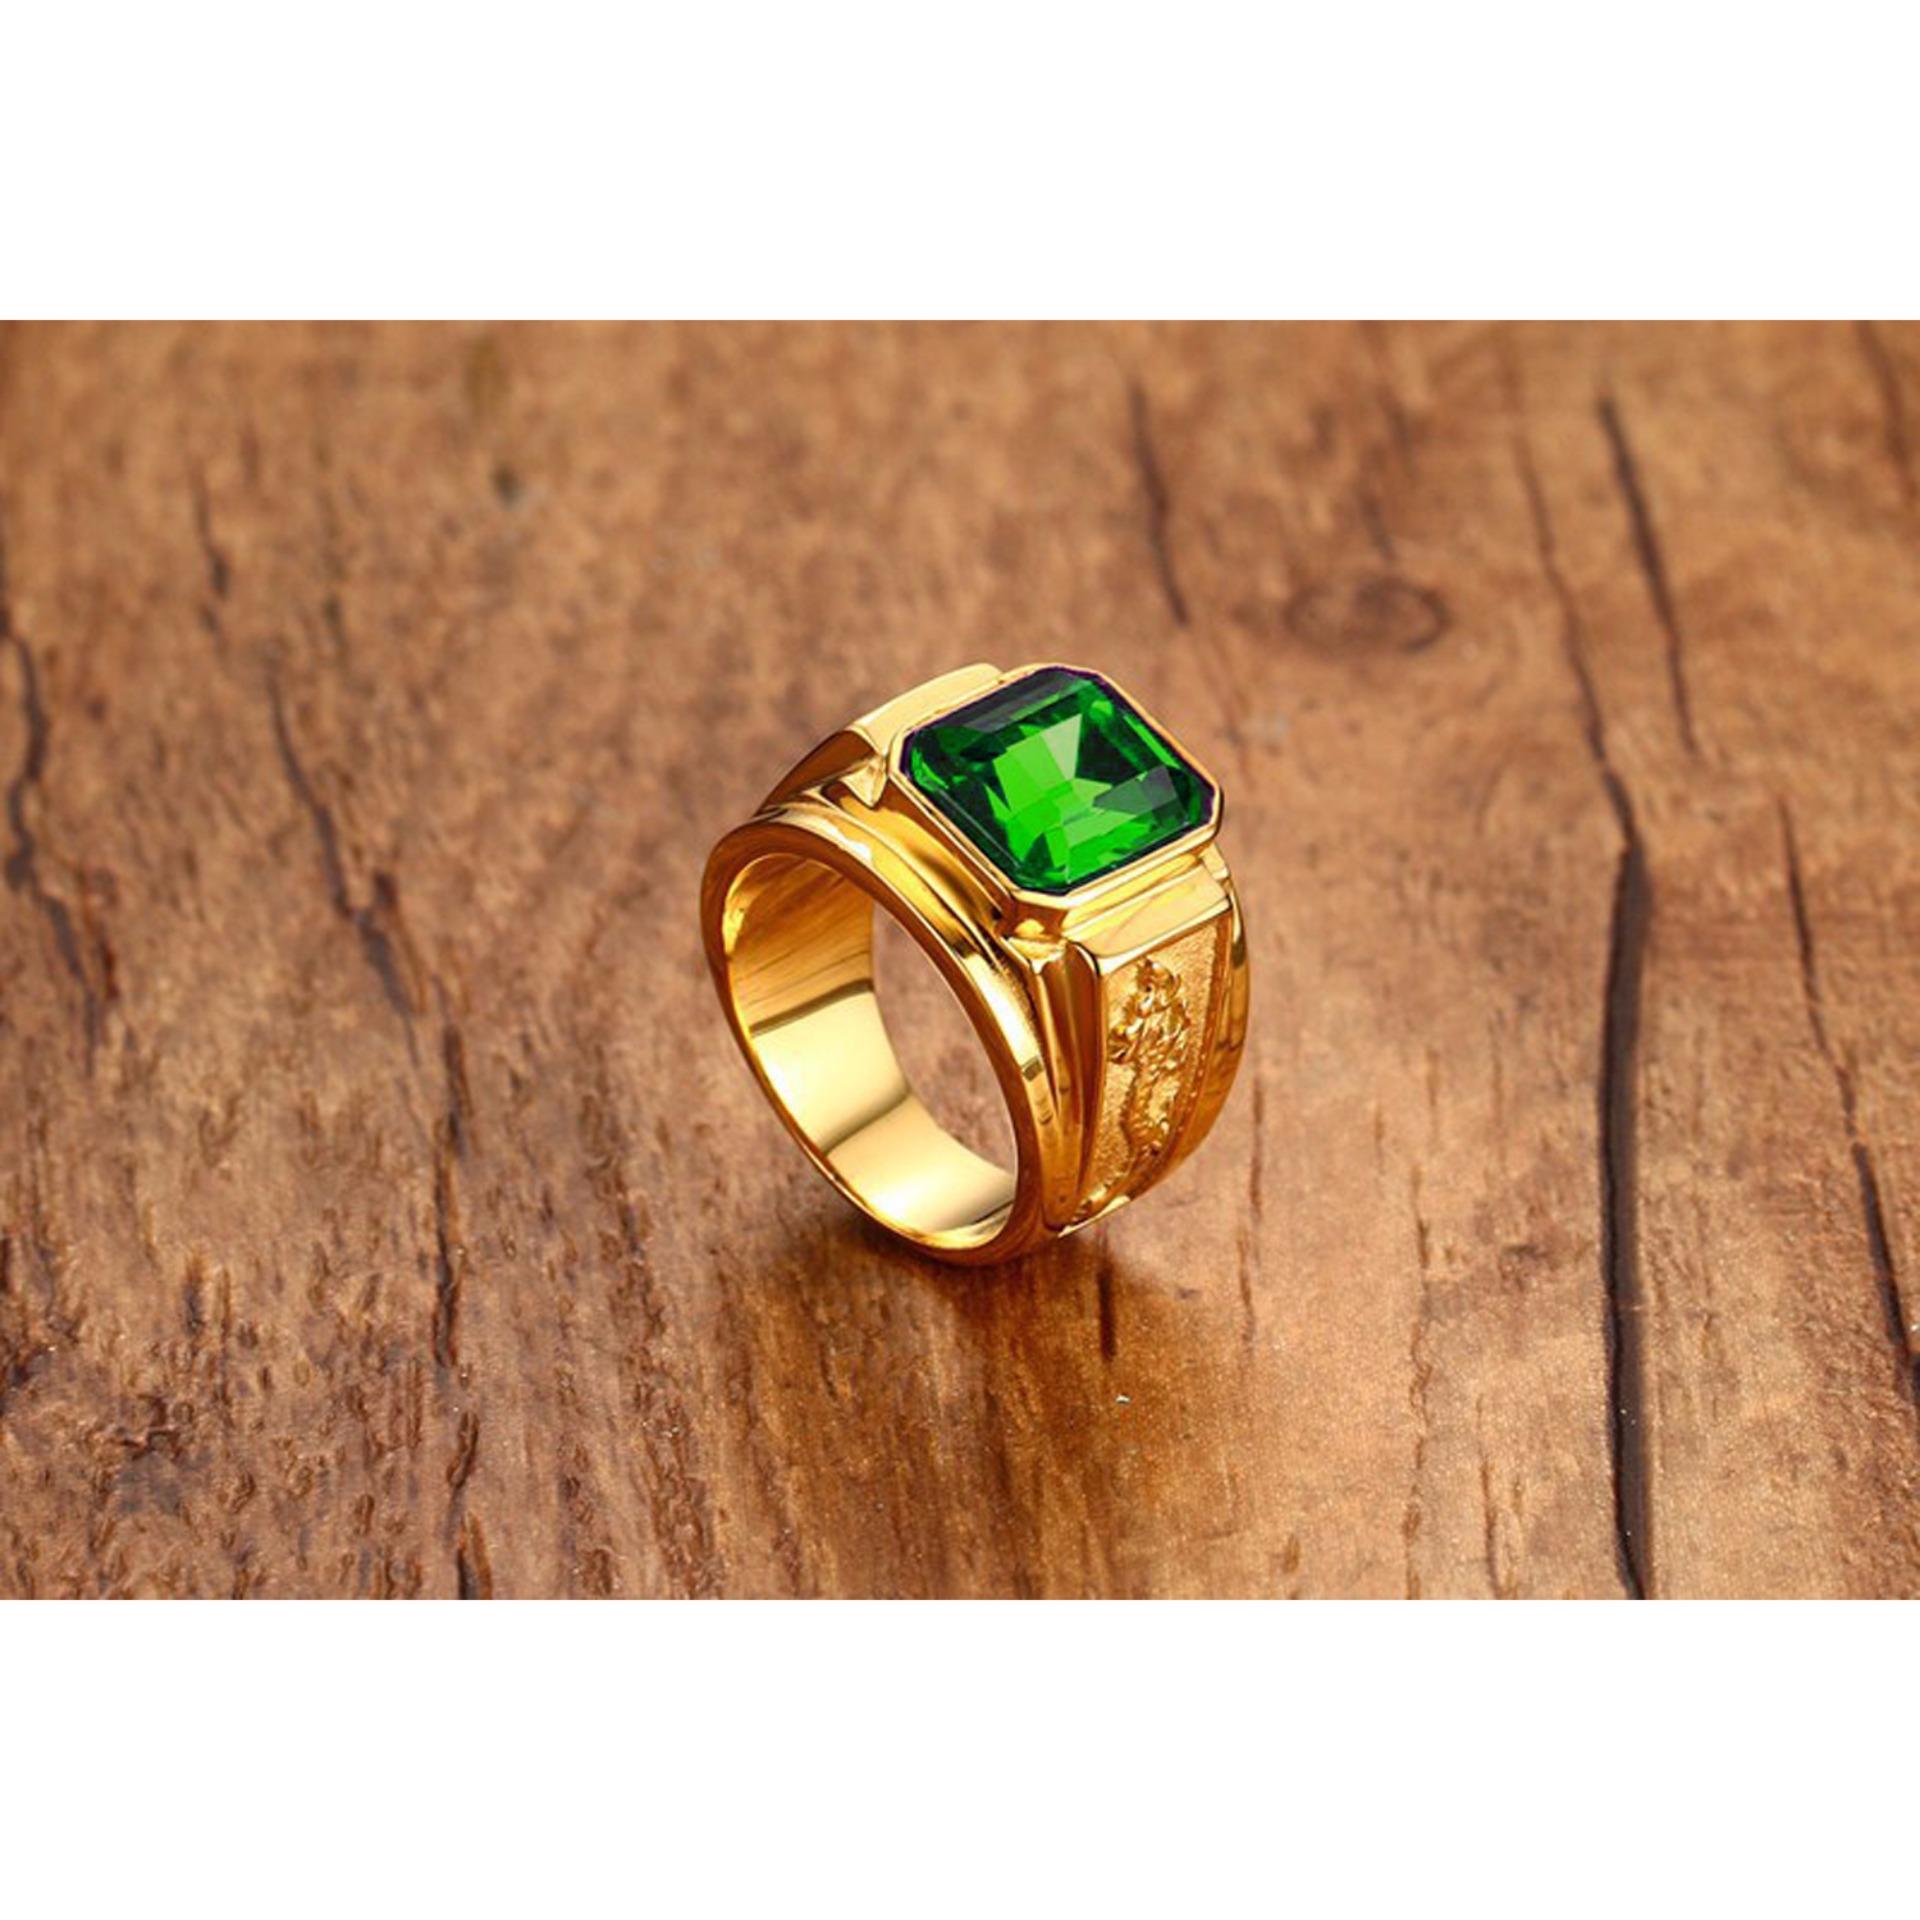 Nhẫn vàng nam mặt đá xanh lá cây có ý nghĩa gì? | Apj.vn